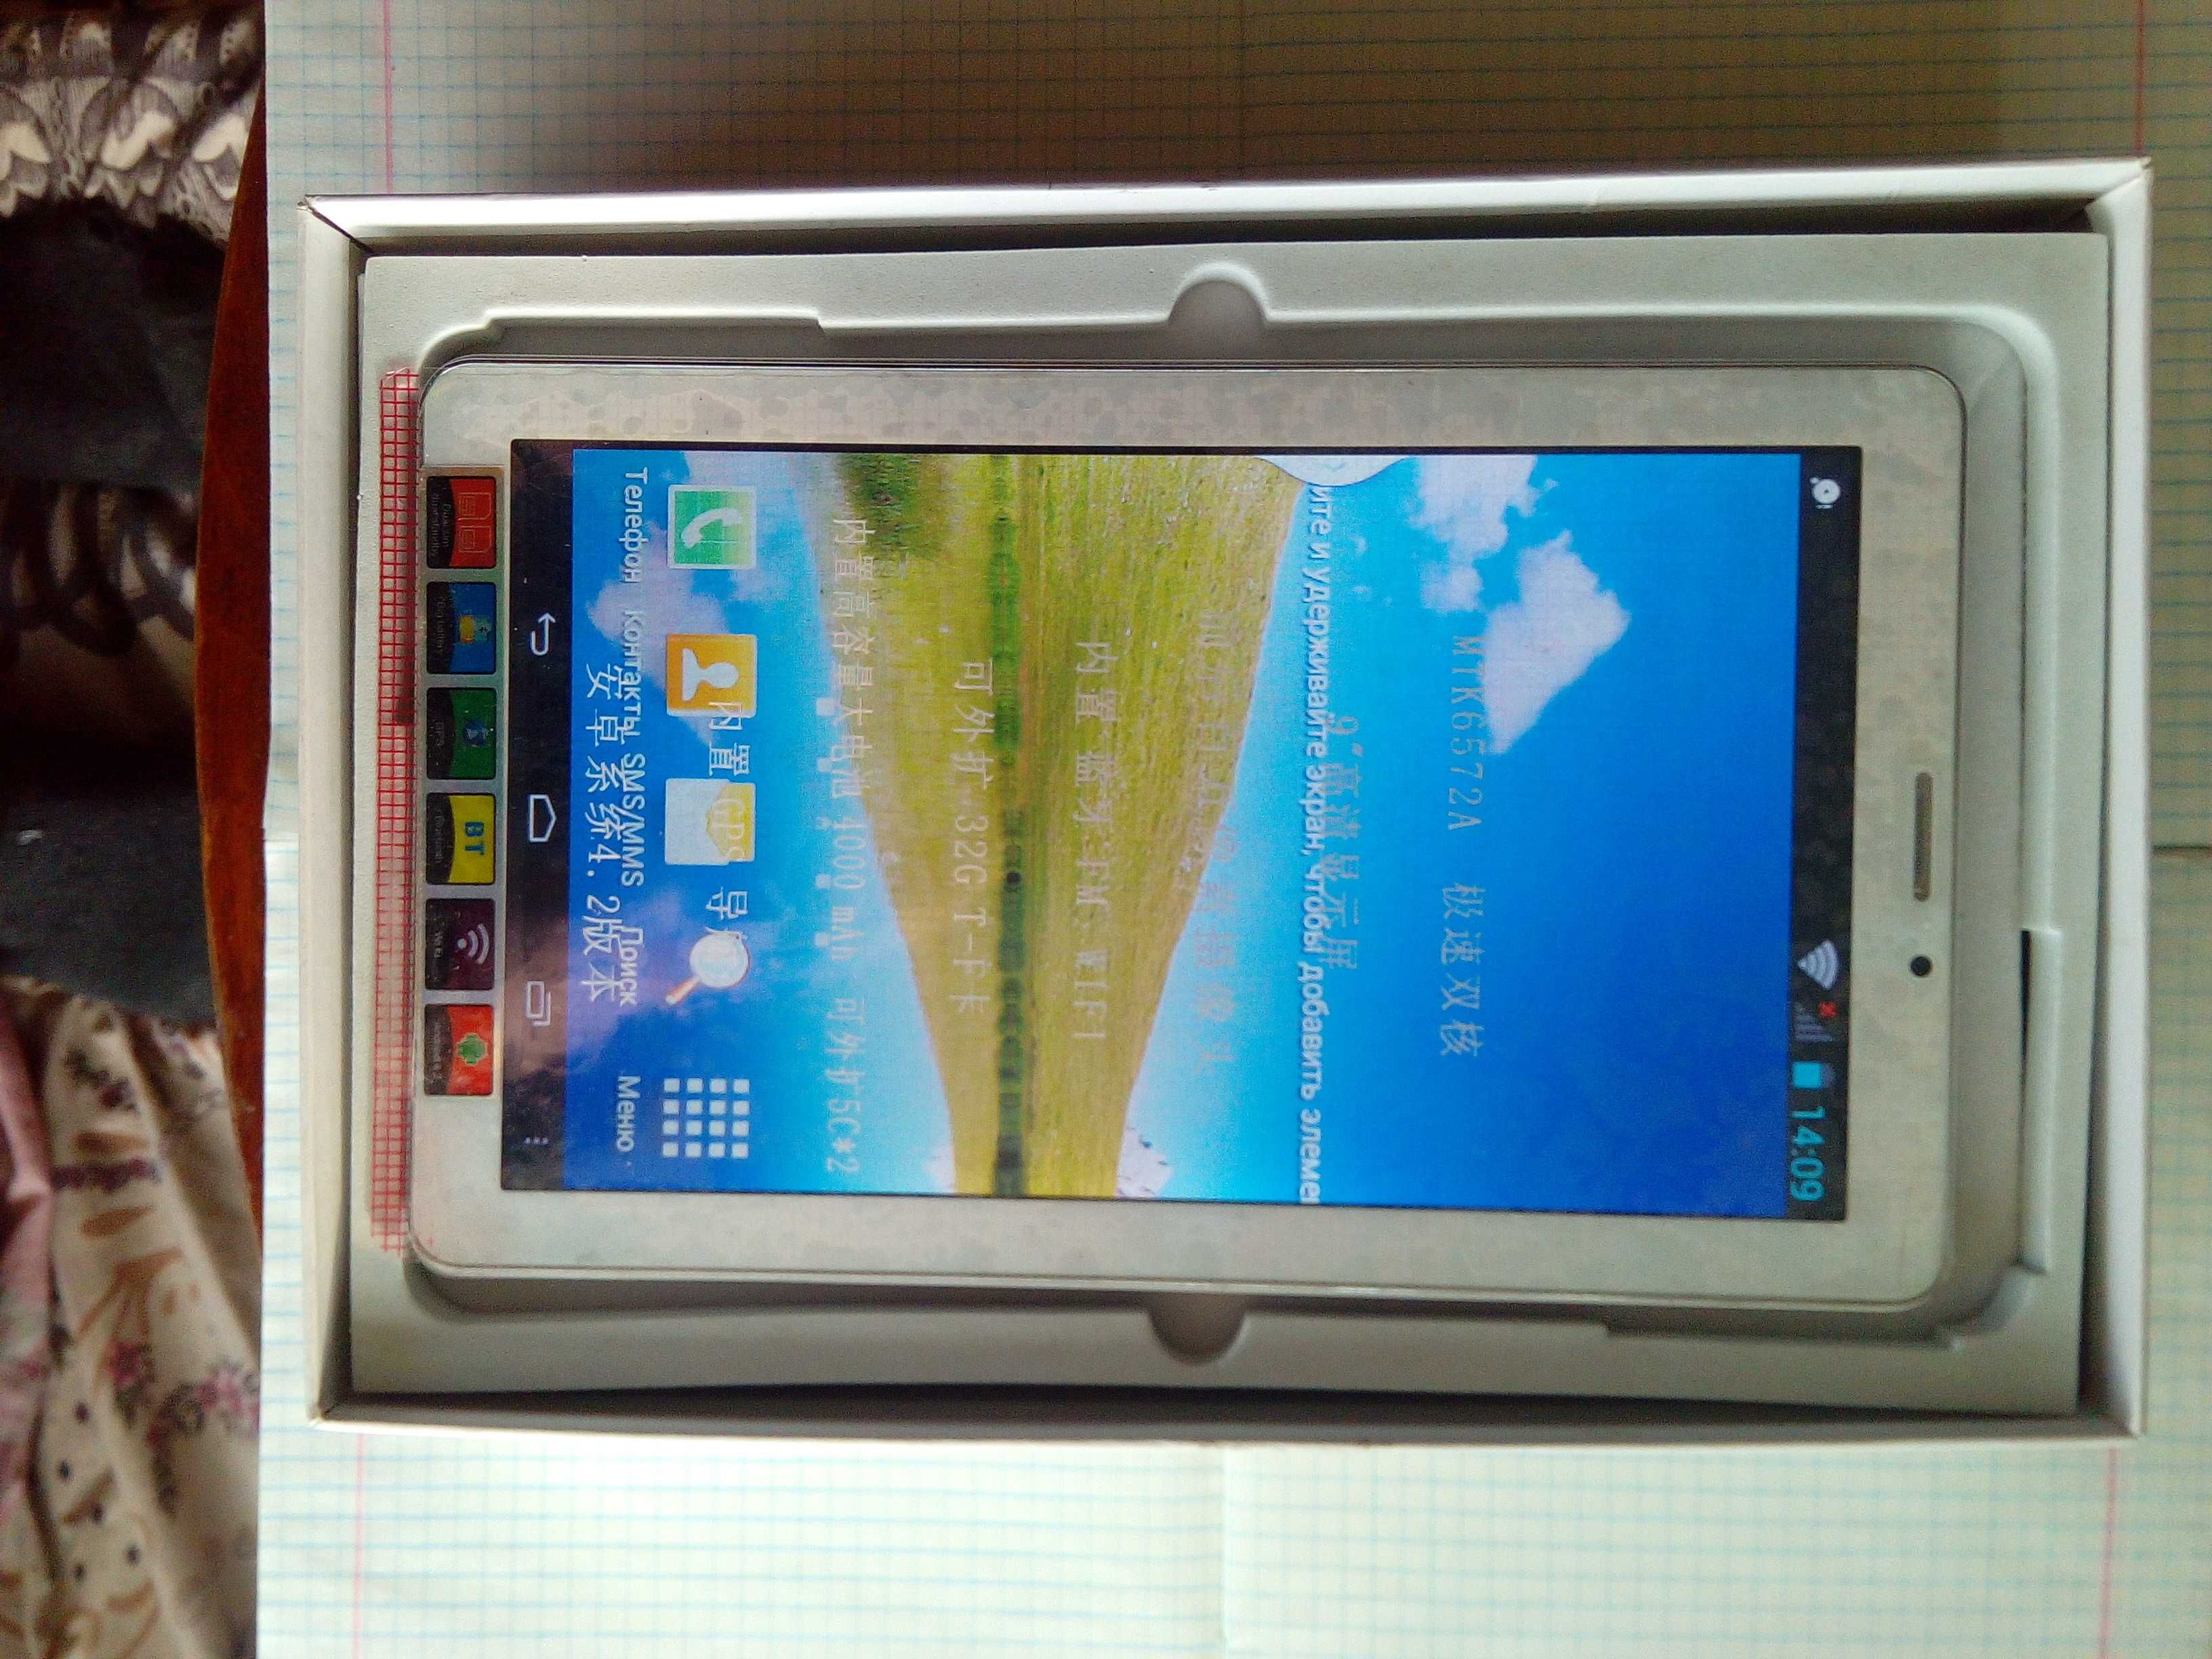 Планшет Samsung p7110, Orion tp 700b,Atlanfa at-md-91. Продам /обмен.